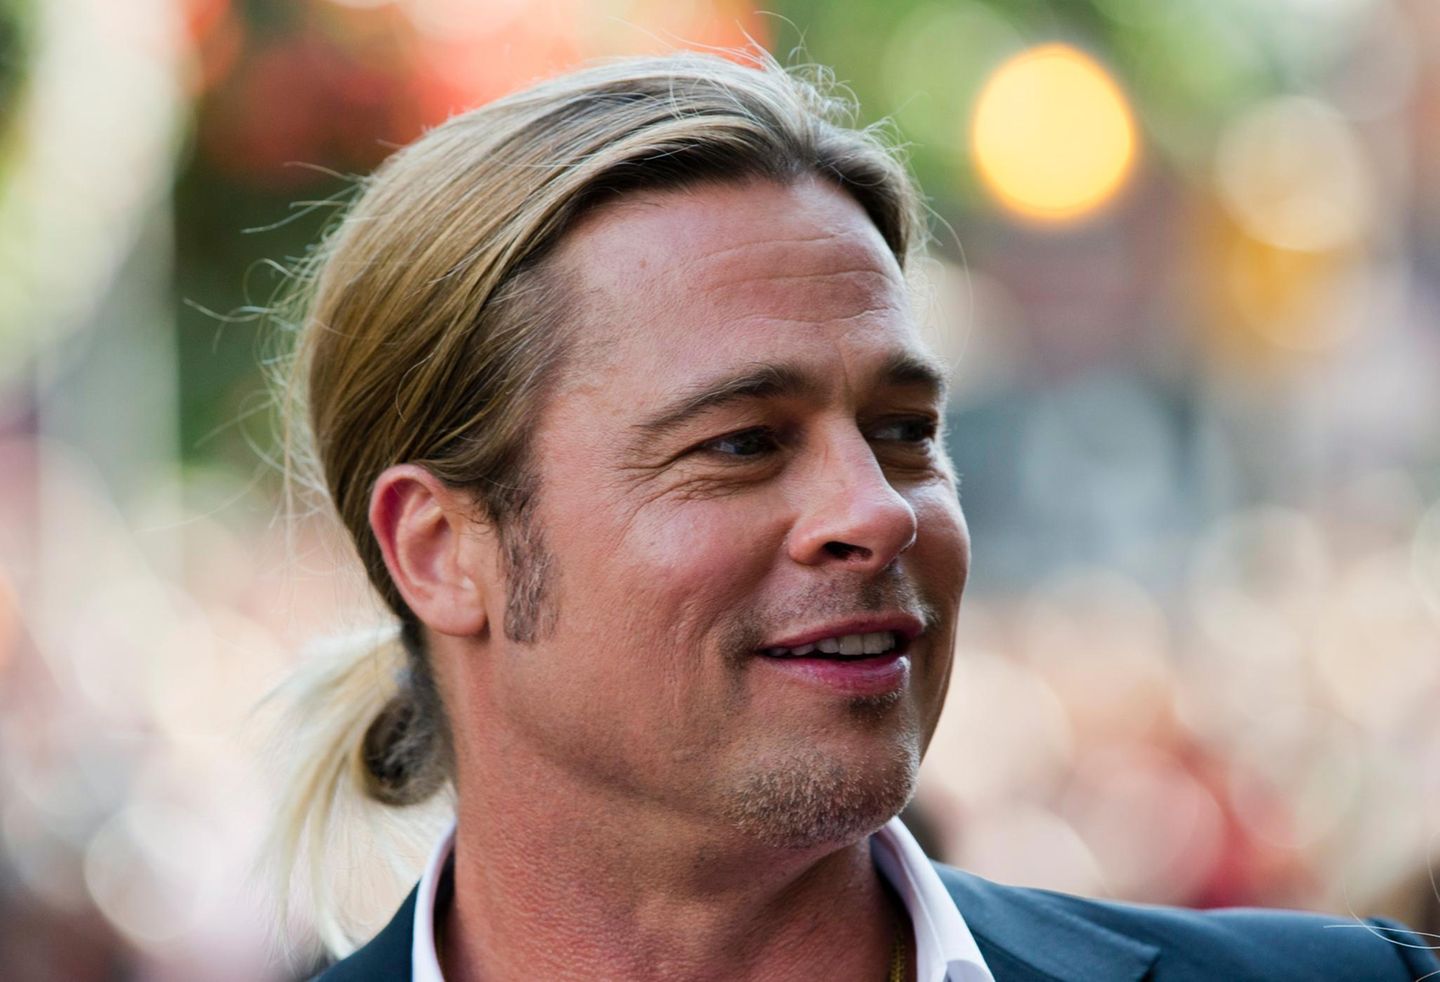 2013  Und noch ein Film, bei dem Brad Pitt neben dem Schaupiel auch produziert hat: "12 Years a Slave" läuft auf dem "Toronto International Film Festival".